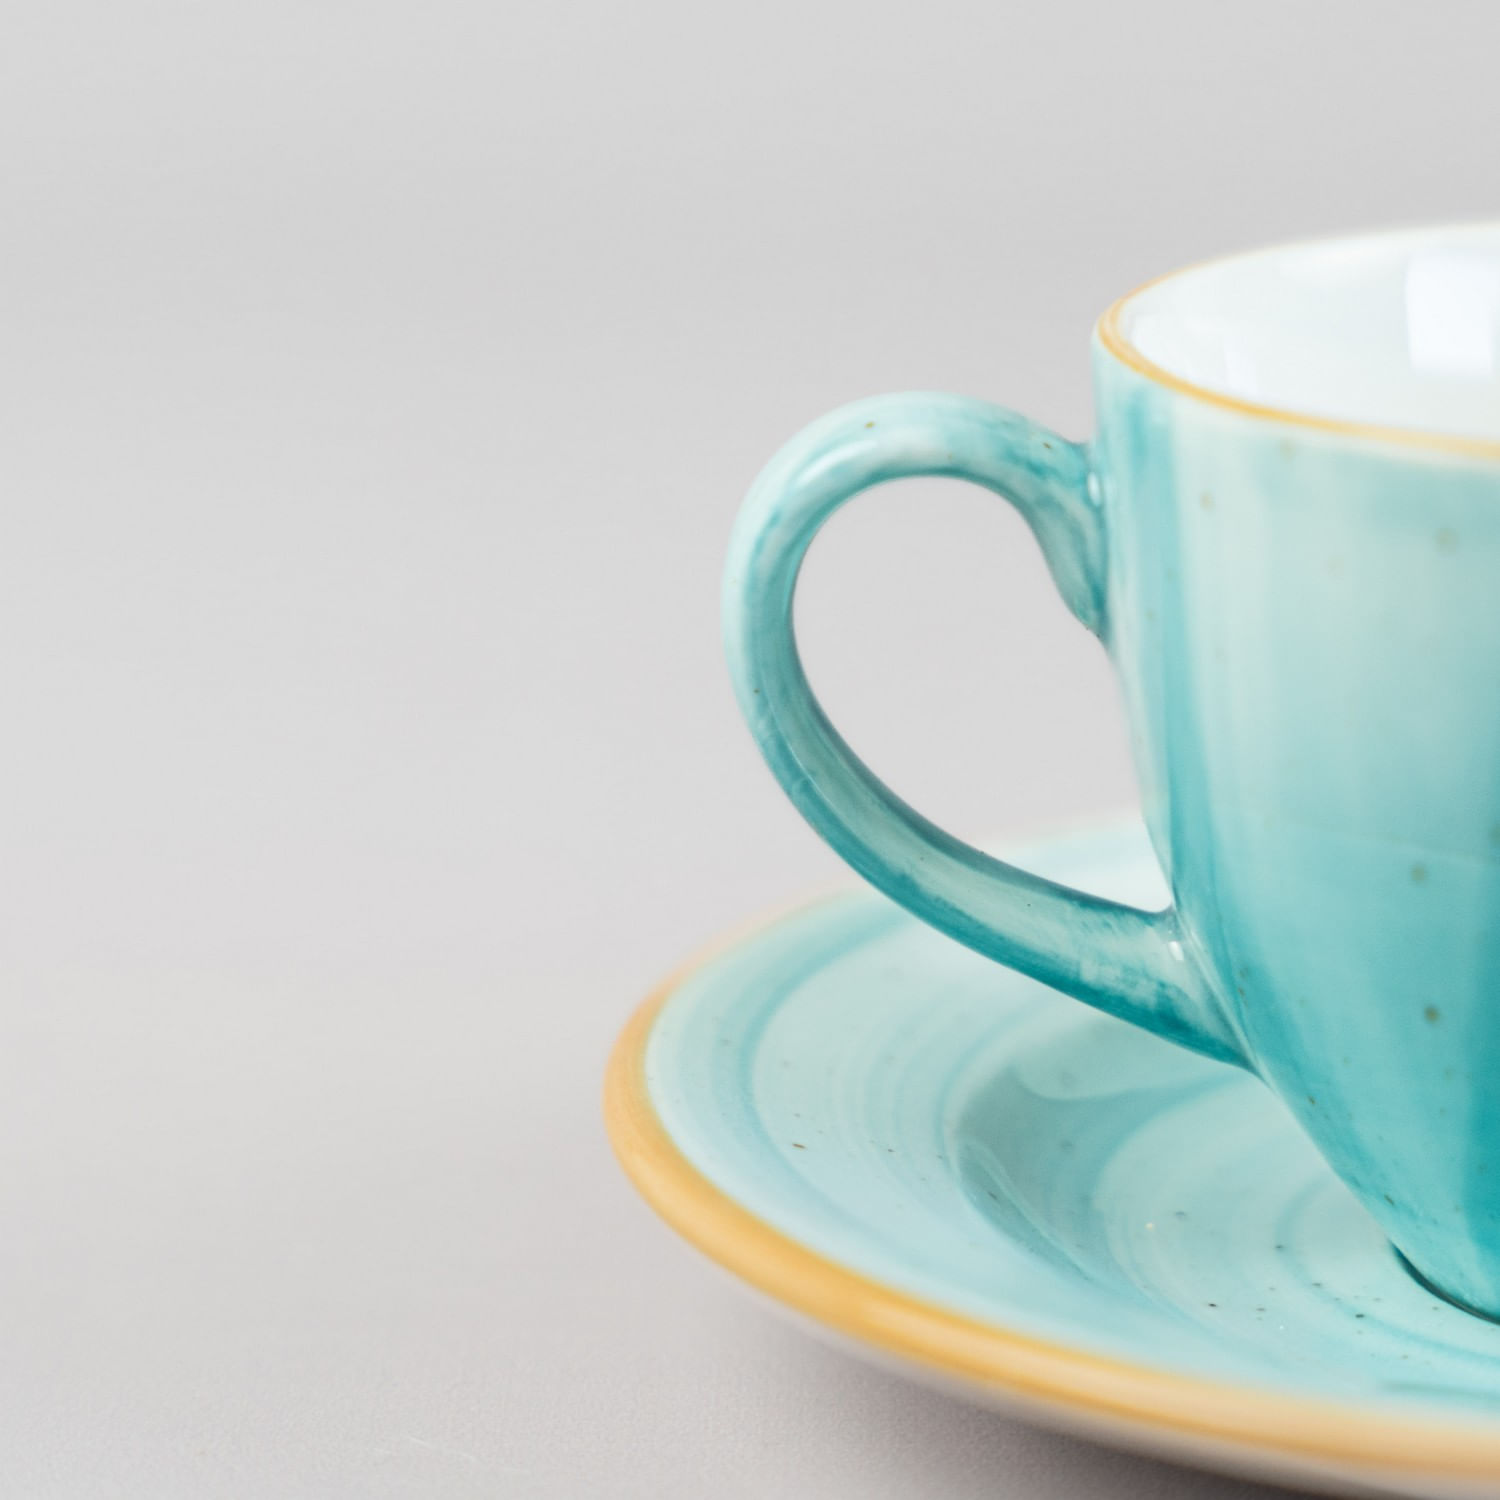 Conjunto taza de té + plato by Ideal Infusions